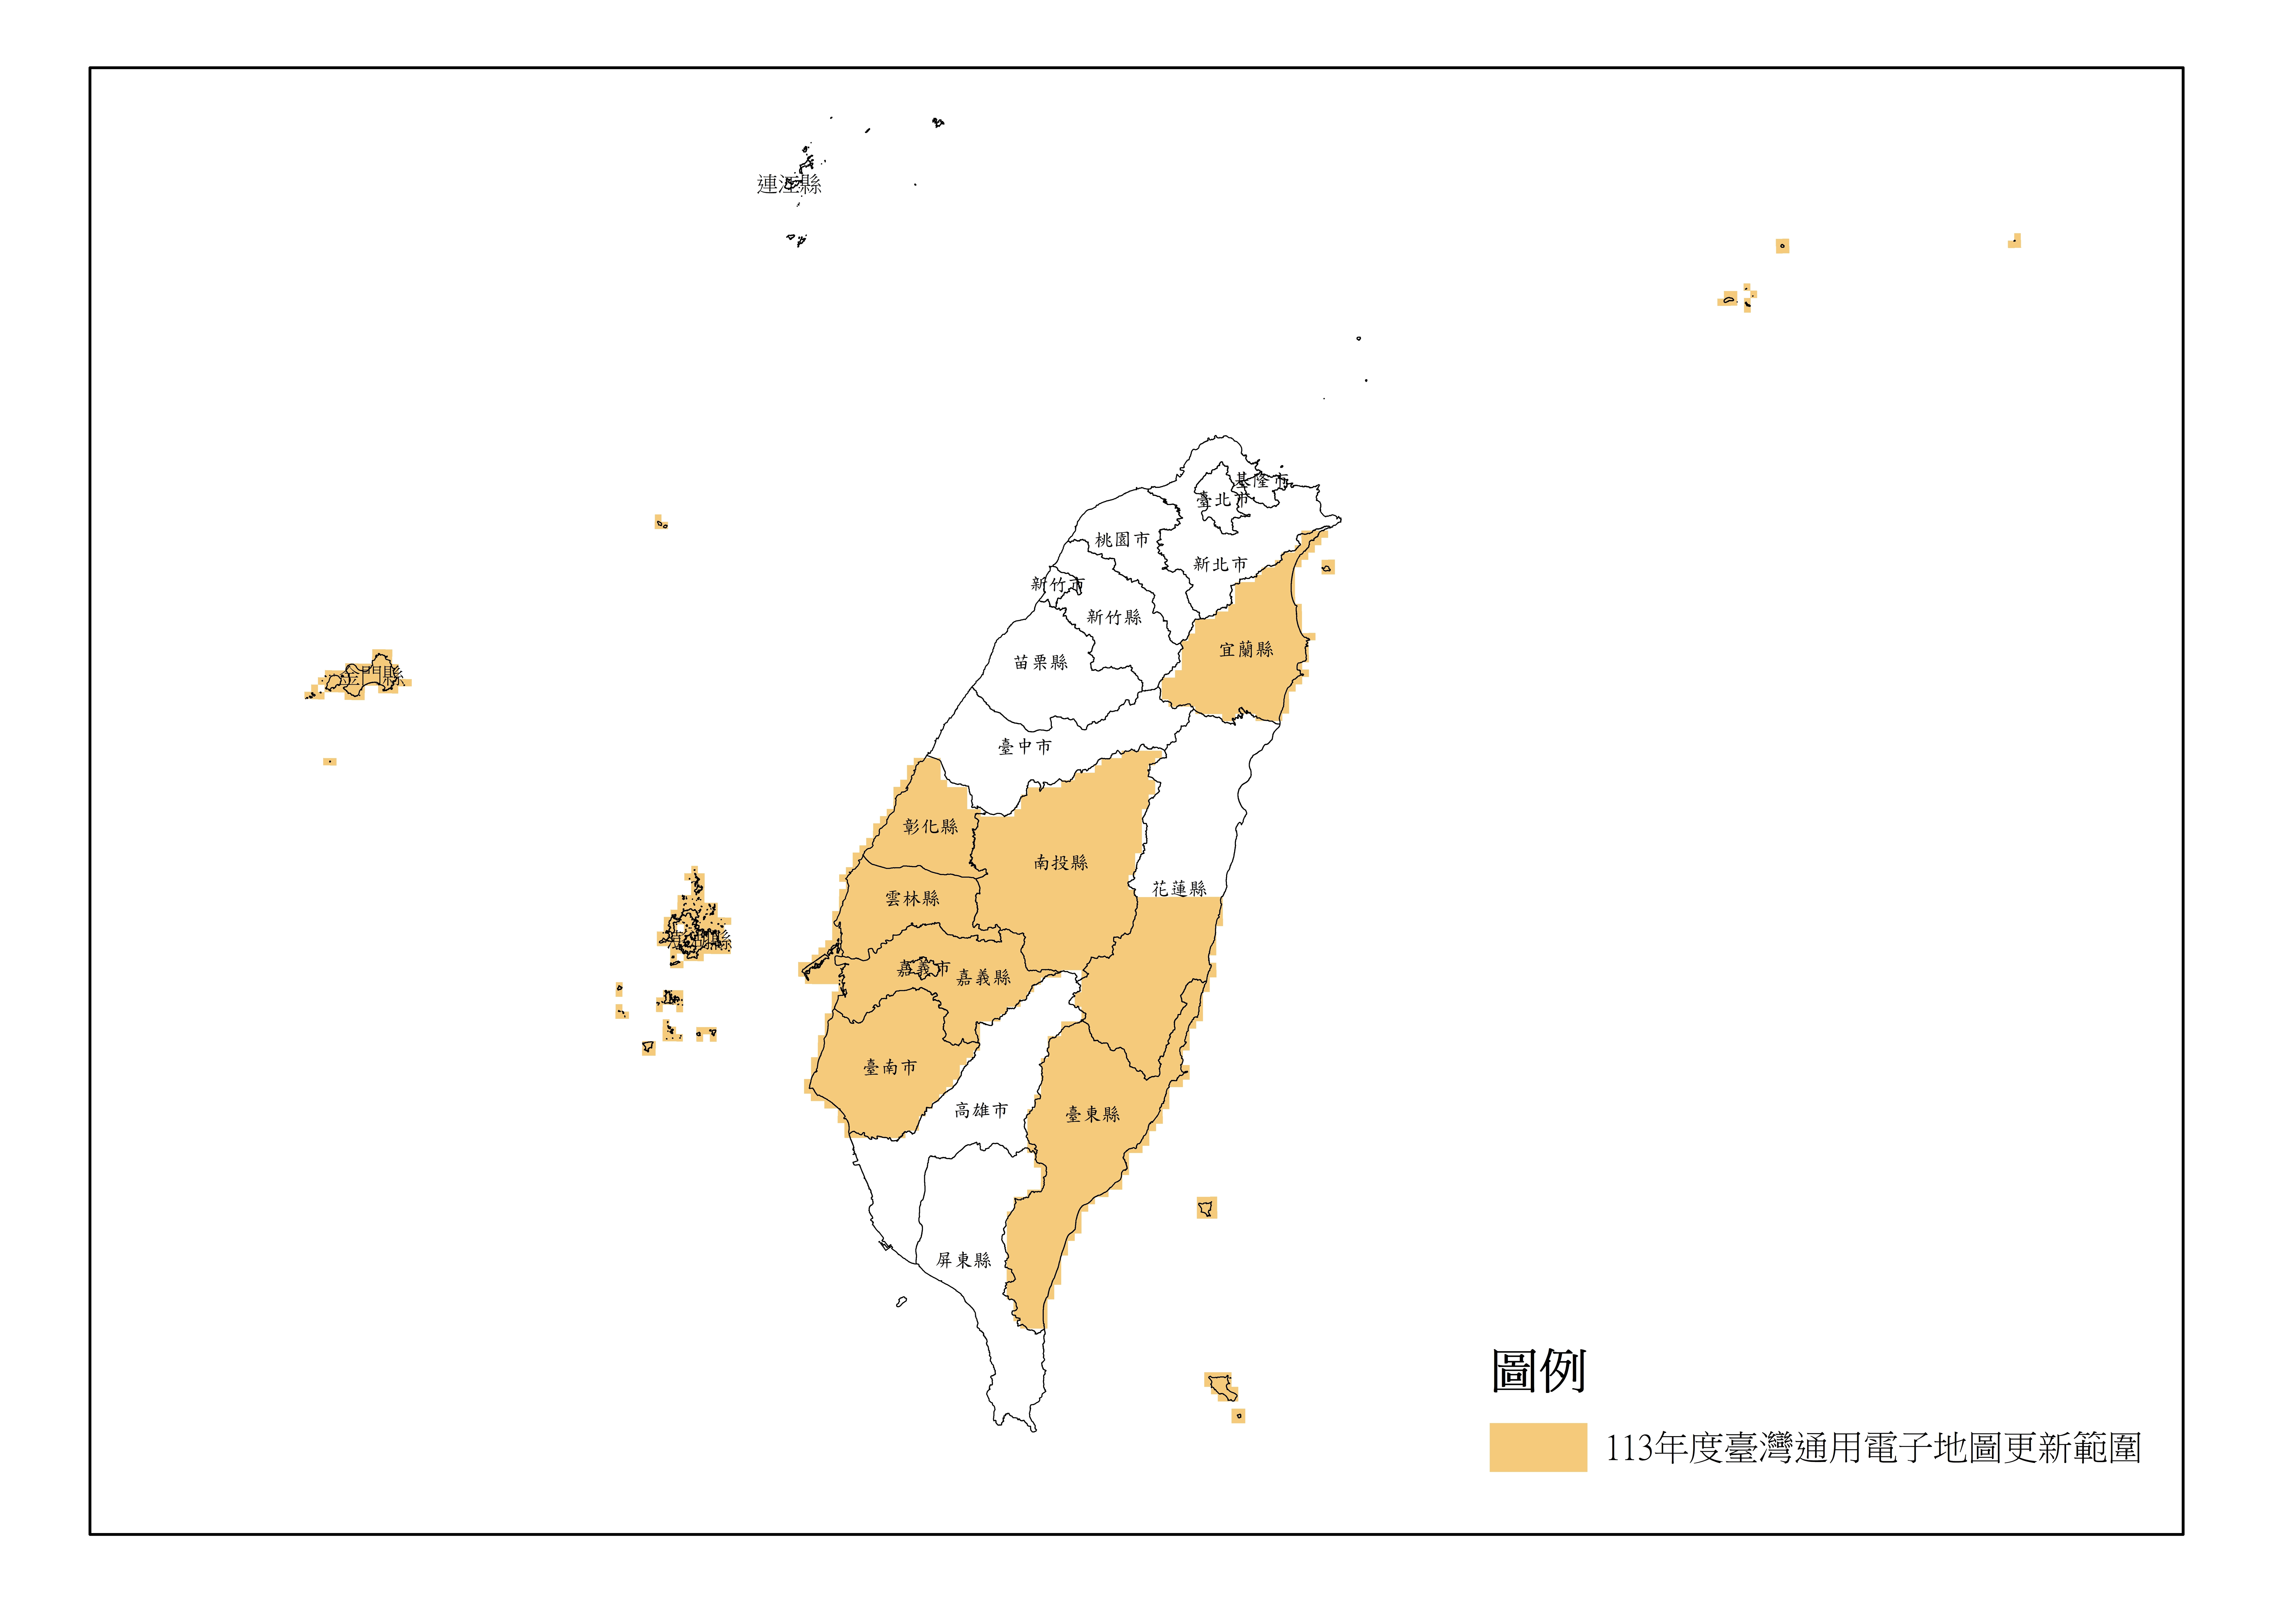 113年度臺灣通用電子地圖更新範圍示意圖